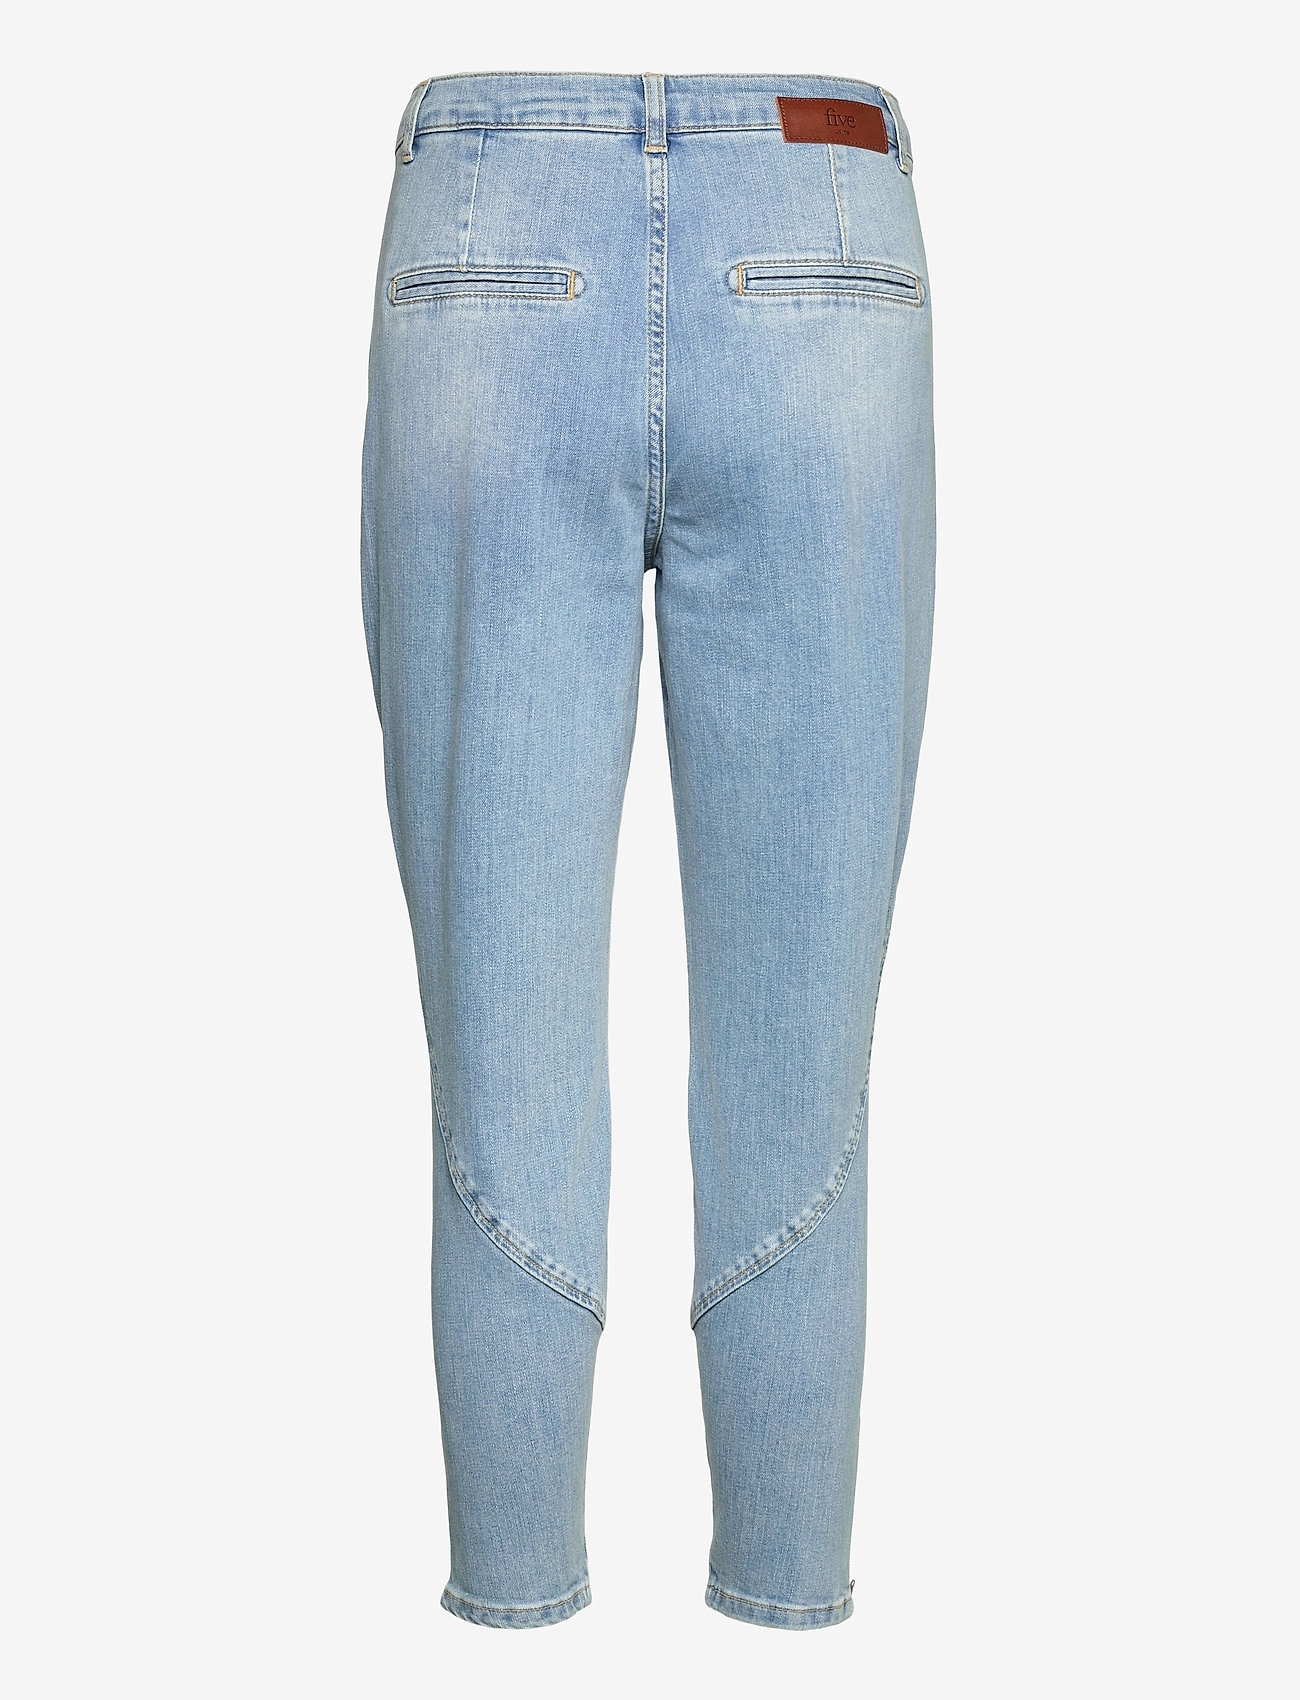 FIVEUNITS - Jolie Zip 241 - slim fit jeans - chalk blue - 1